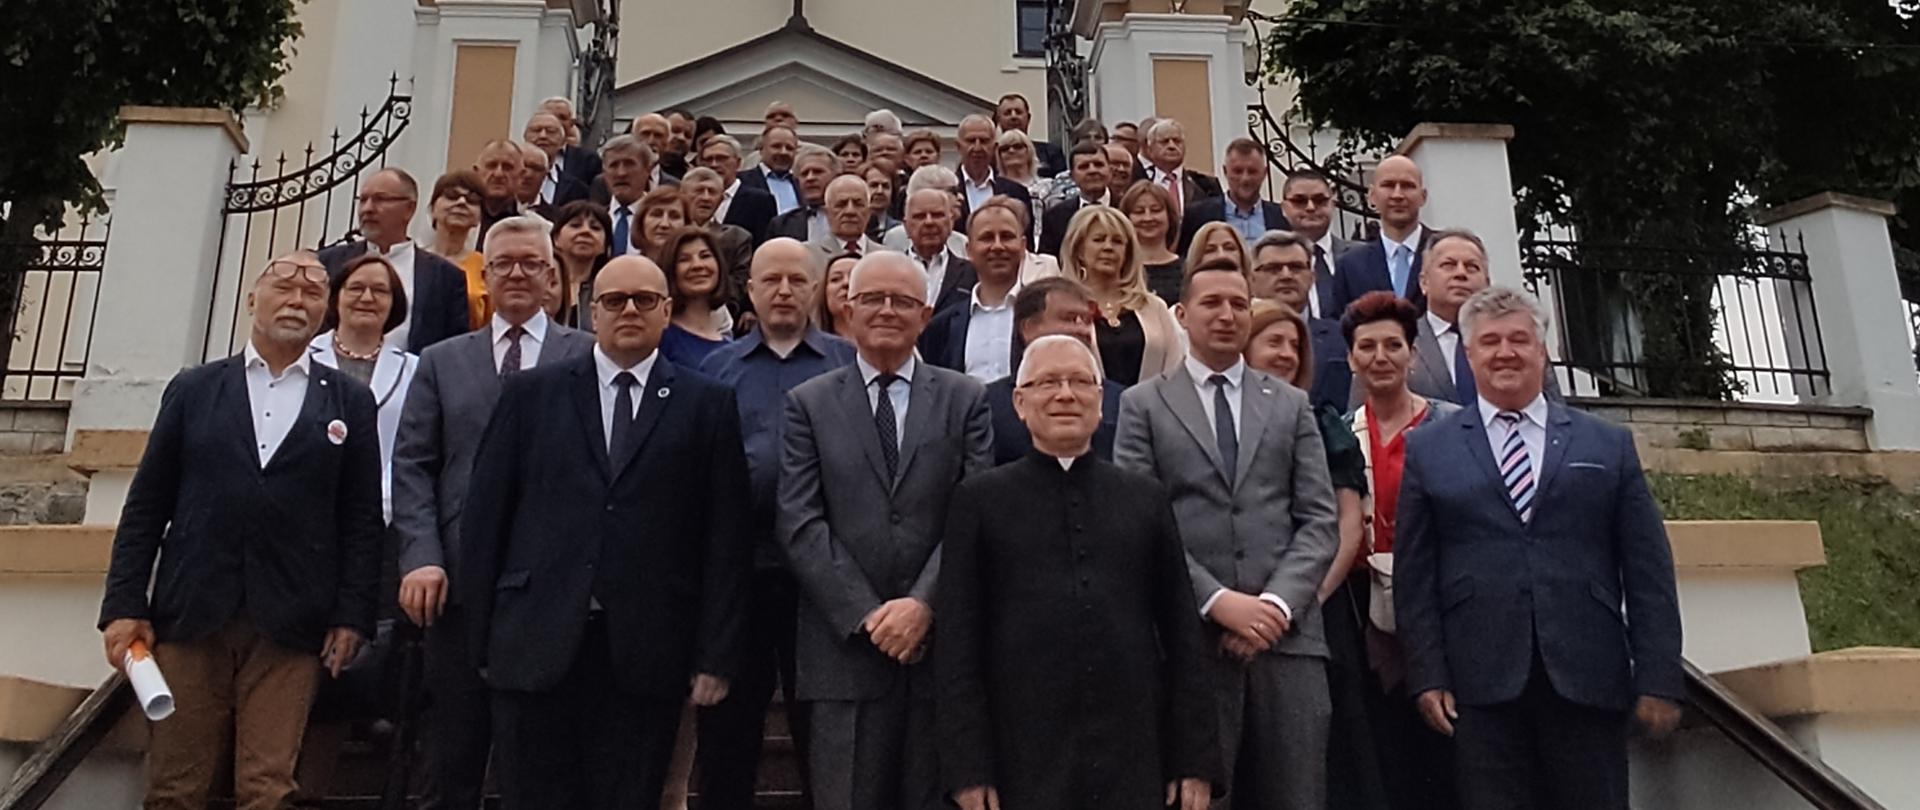 Jubileusz ZSP Żelechów - uczestnicy uroczystości